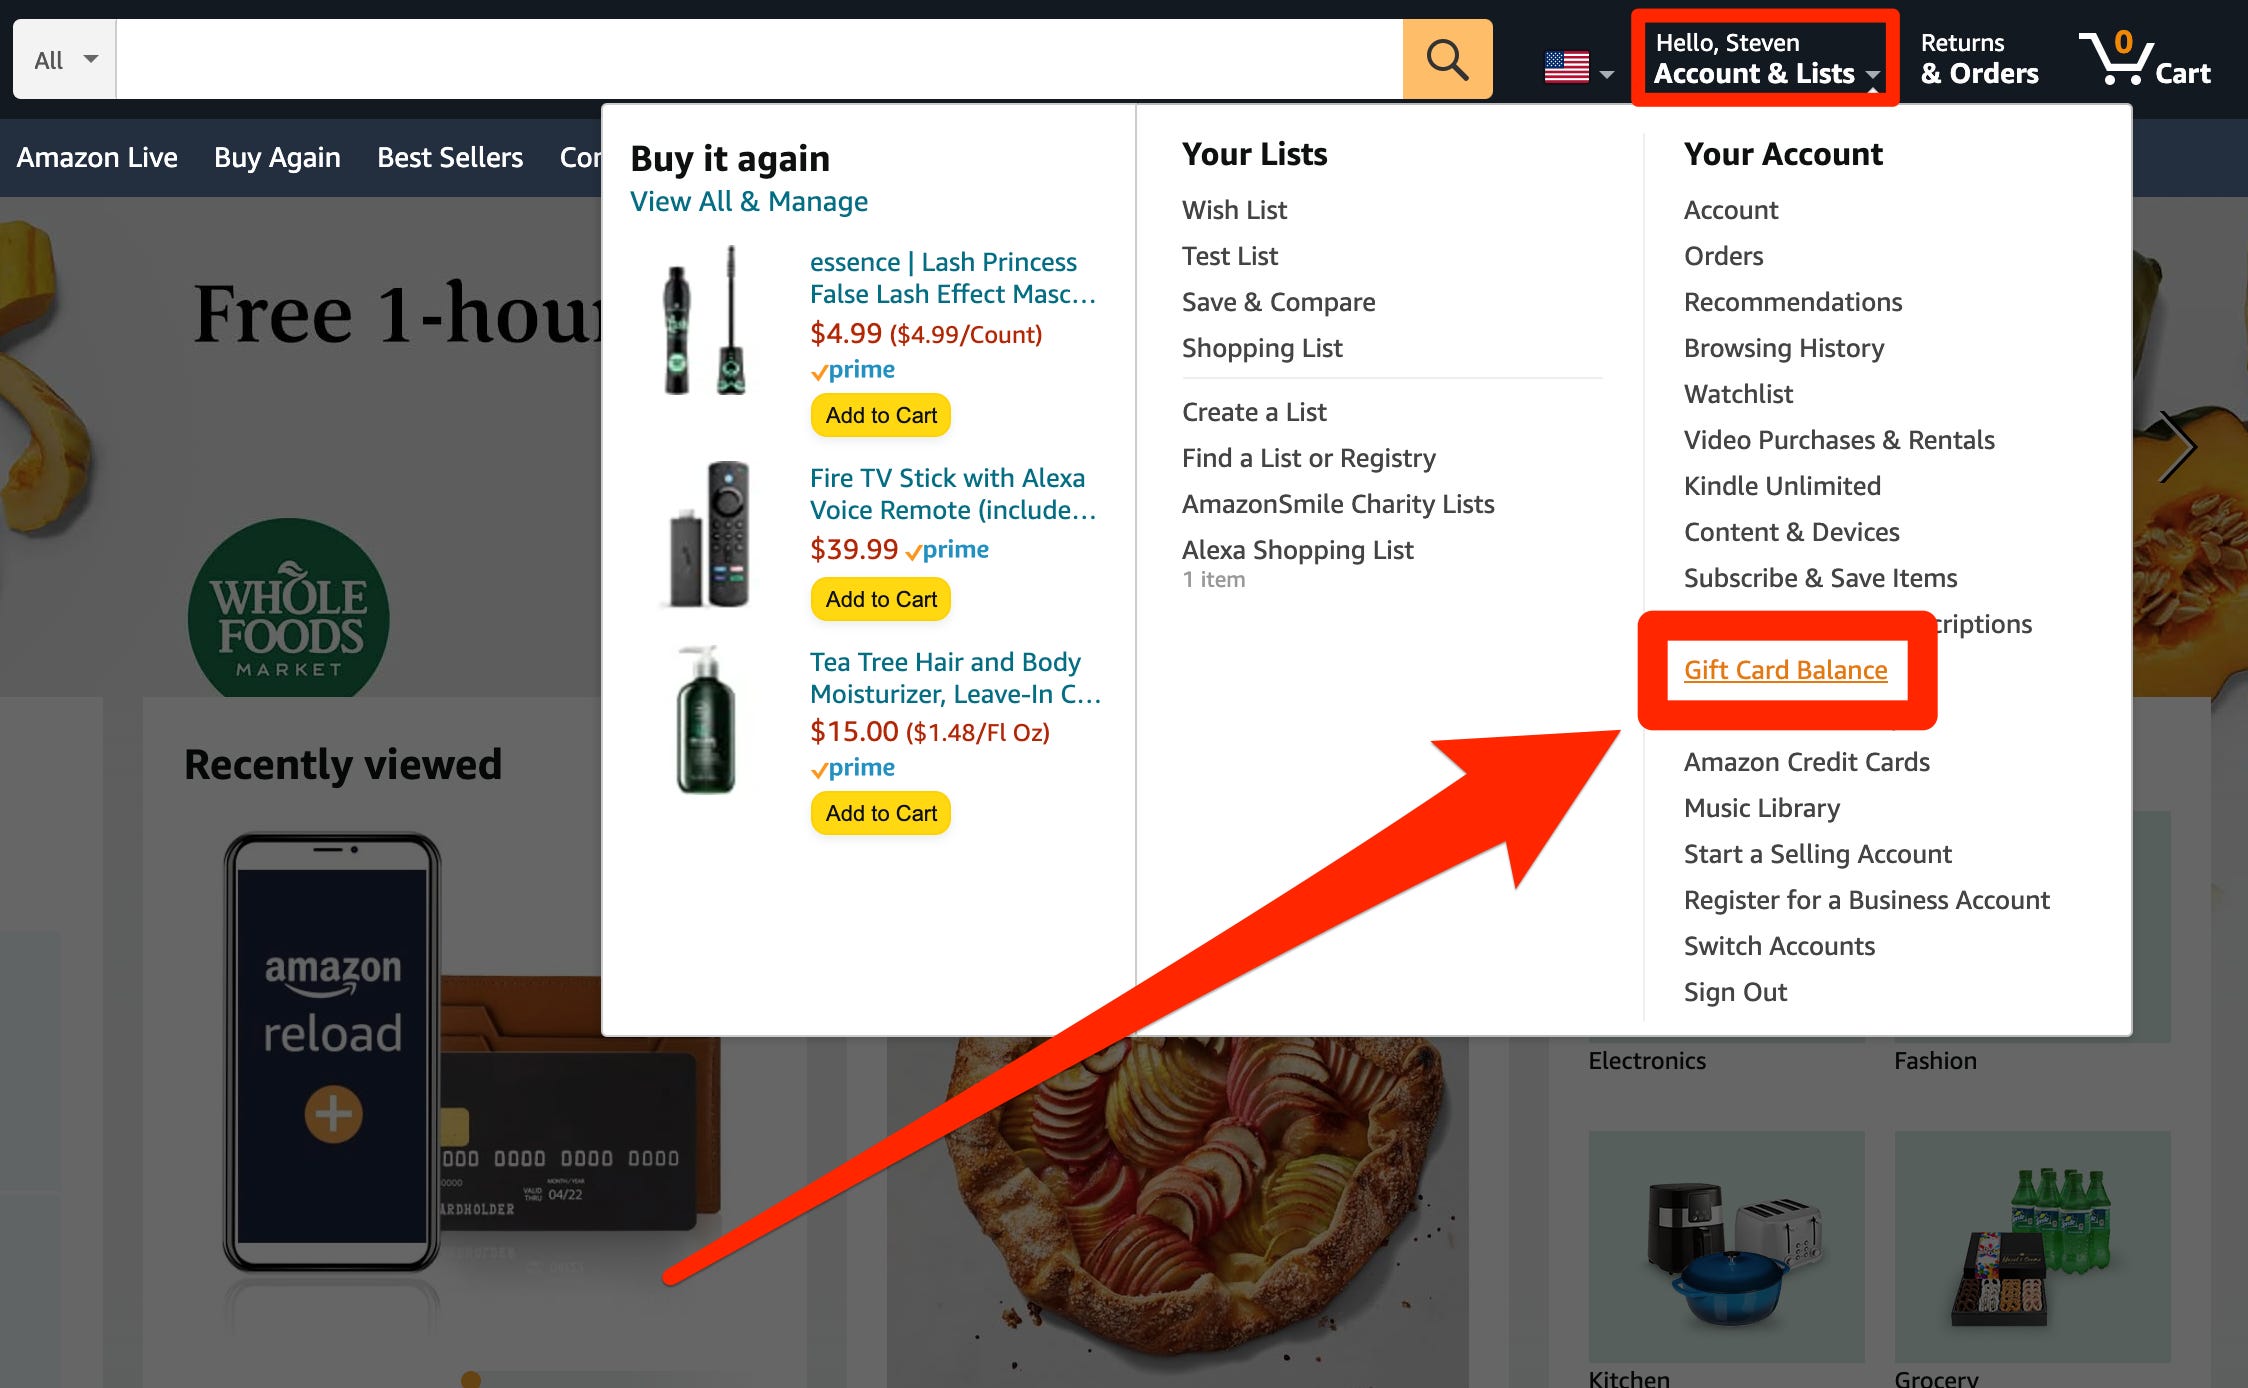 Il menu Account e liste sul sito Web di Amazon, con l'opzione "Saldo carta regalo" evidenziata.